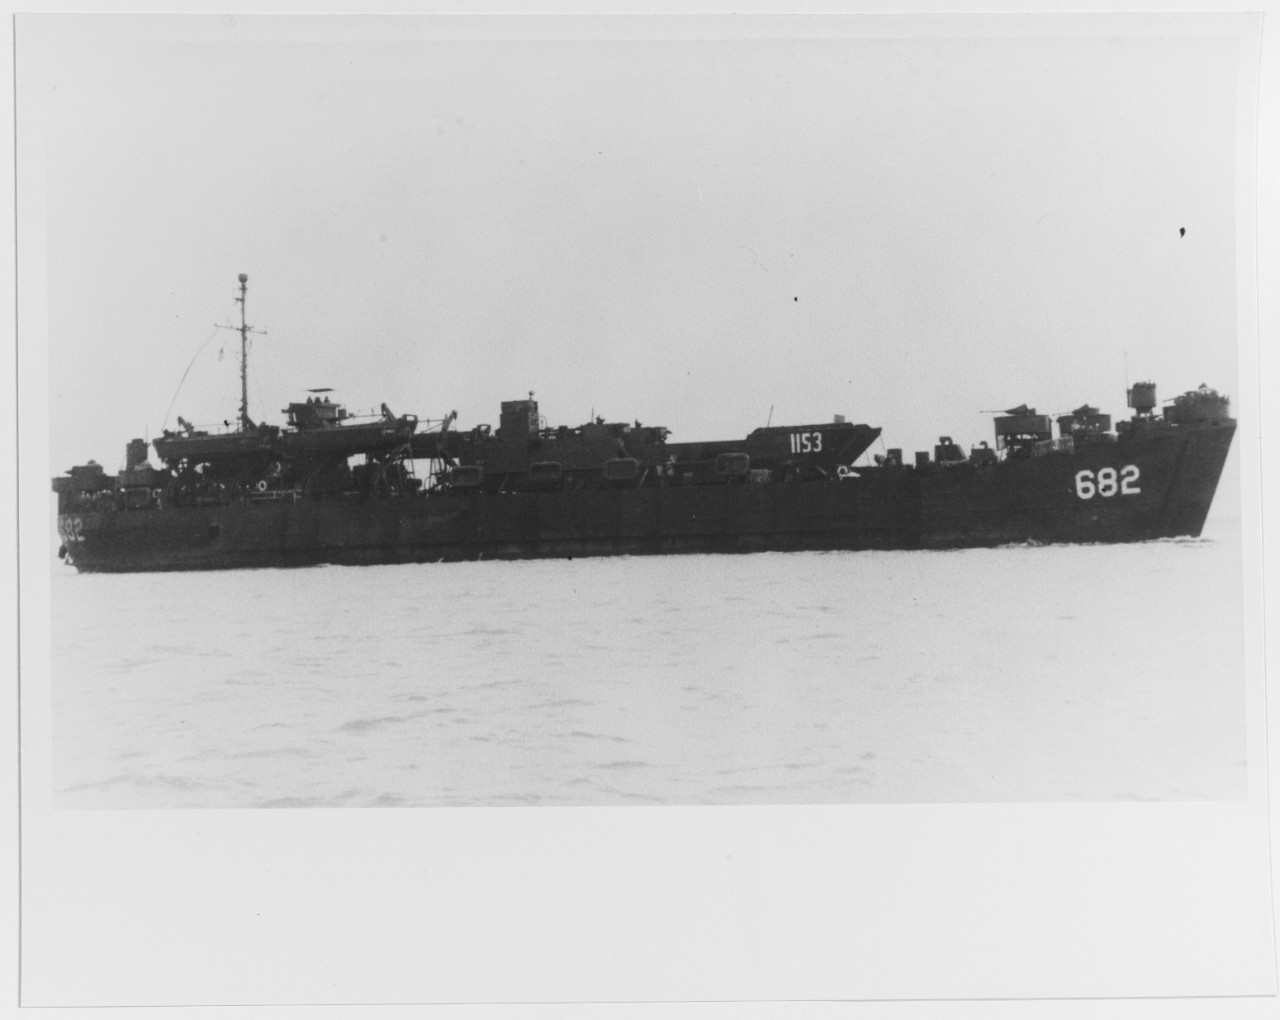 USS LST-682